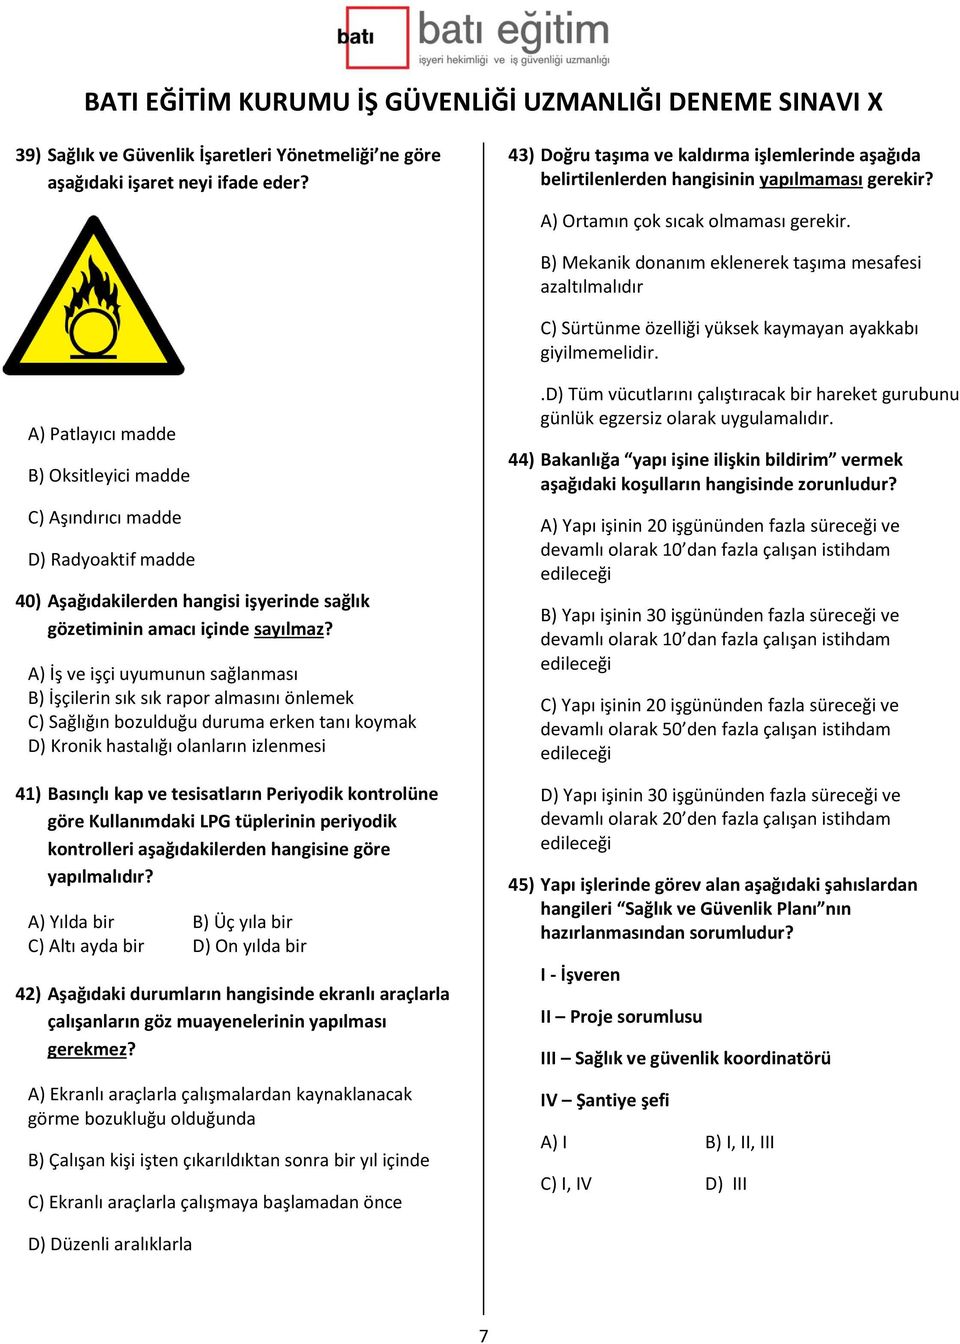 A) Patlayıcı madde B) Oksitleyici madde C) Aşındırıcı madde D) Radyoaktif madde 40) Aşağıdakilerden hangisi işyerinde sağlık gözetiminin amacı içinde sayılmaz?